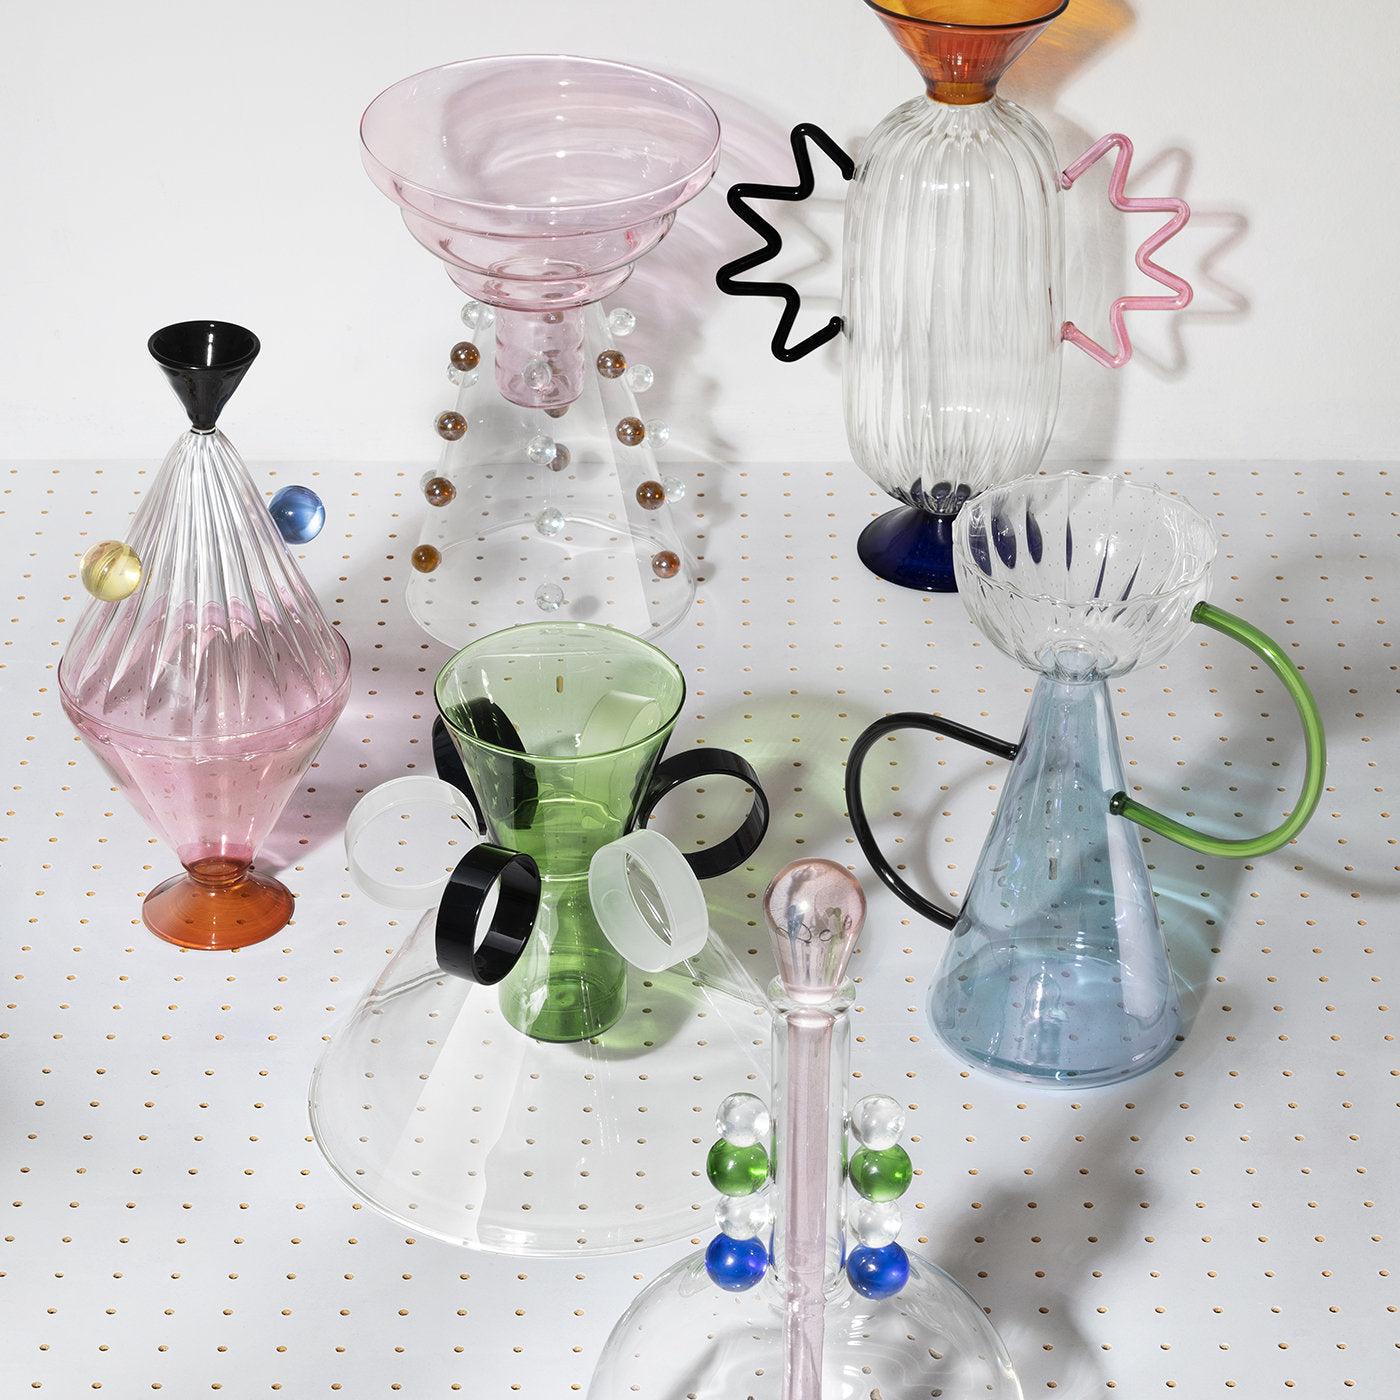 Arabesque 06 Hand-Blown Glass Vase - Alternative view 1